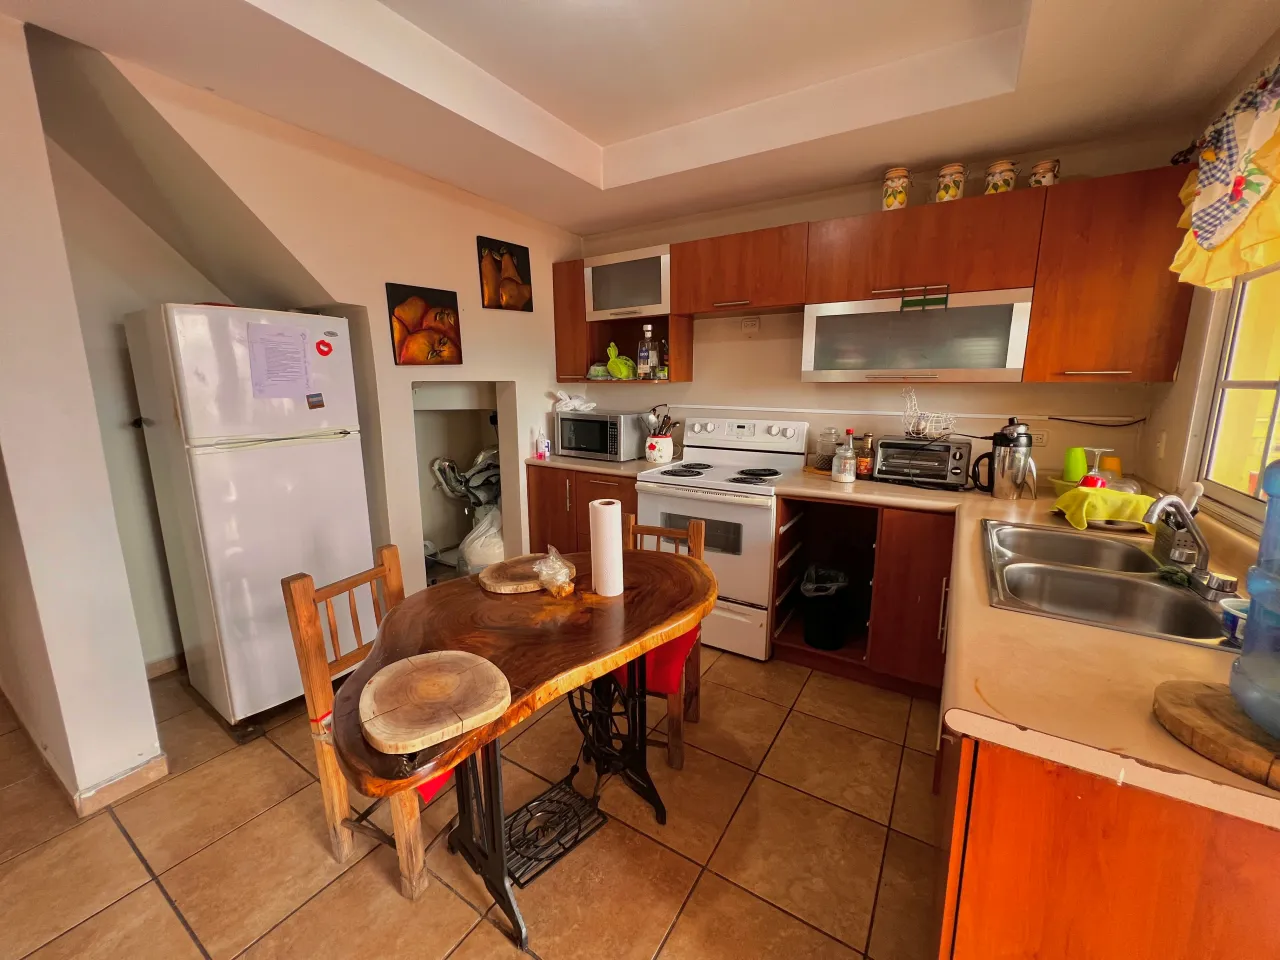 La cocina esta equipada con un mueble de color café con diversos gabinetes para ubicar tus utencilios de cocina.